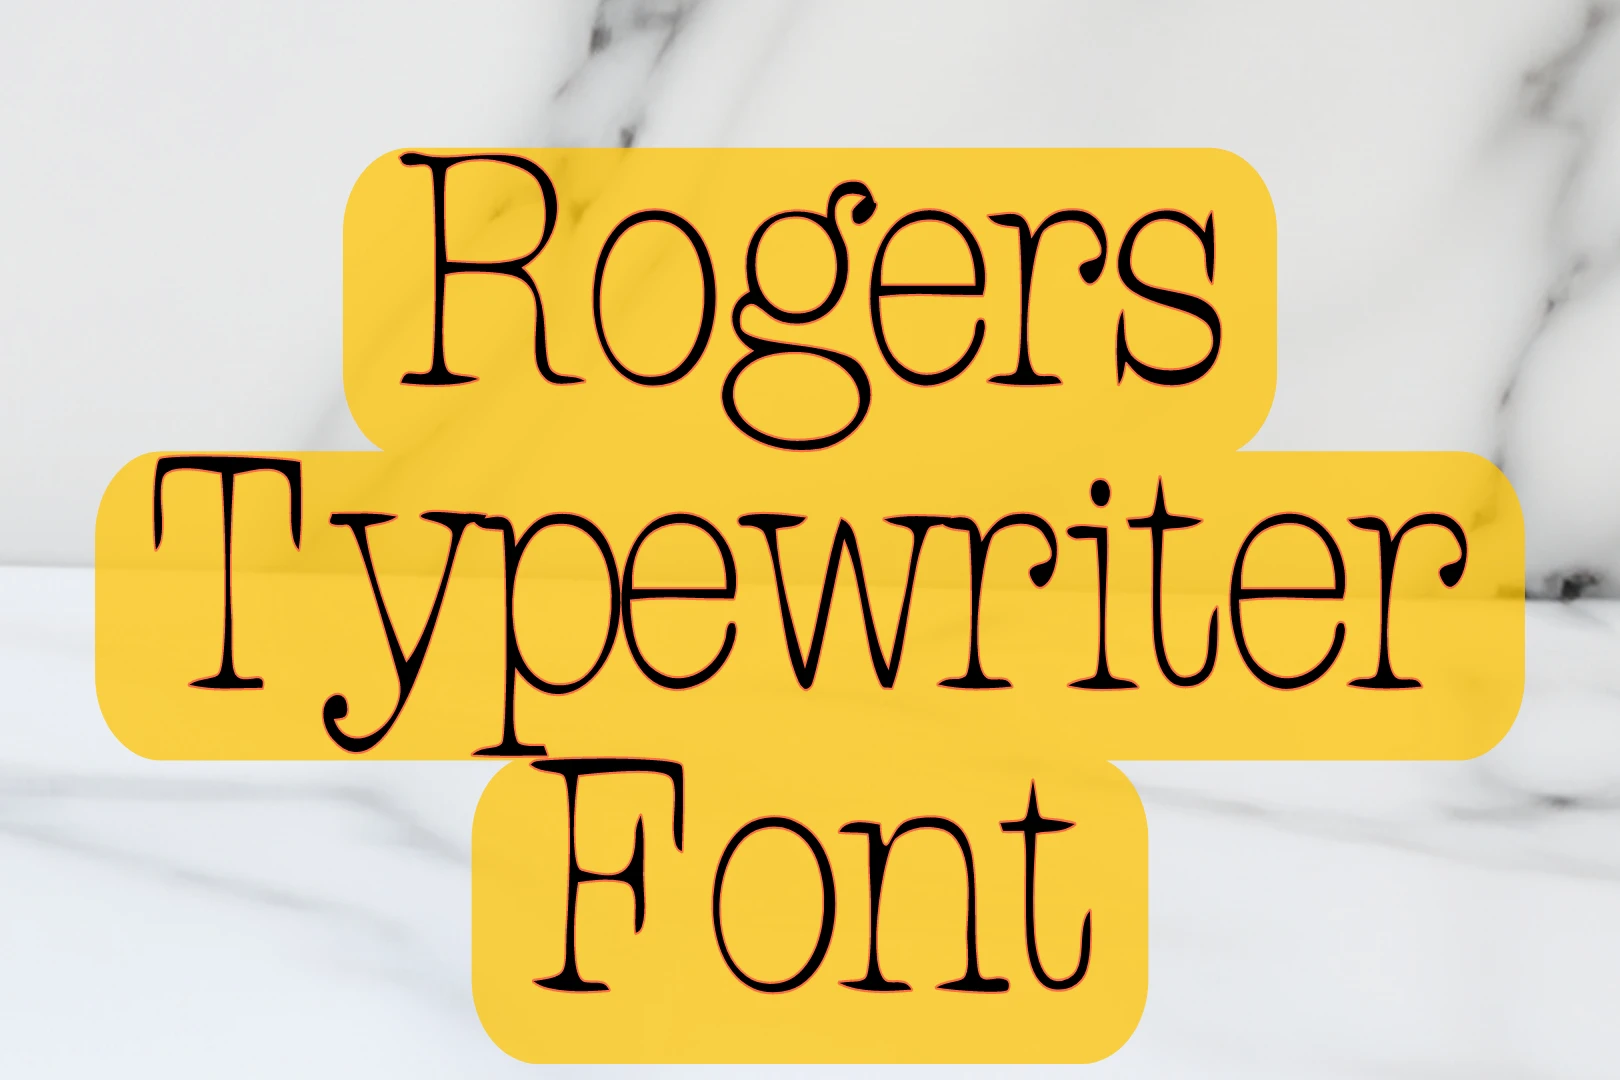 Rogers Typewriter Font Free Download